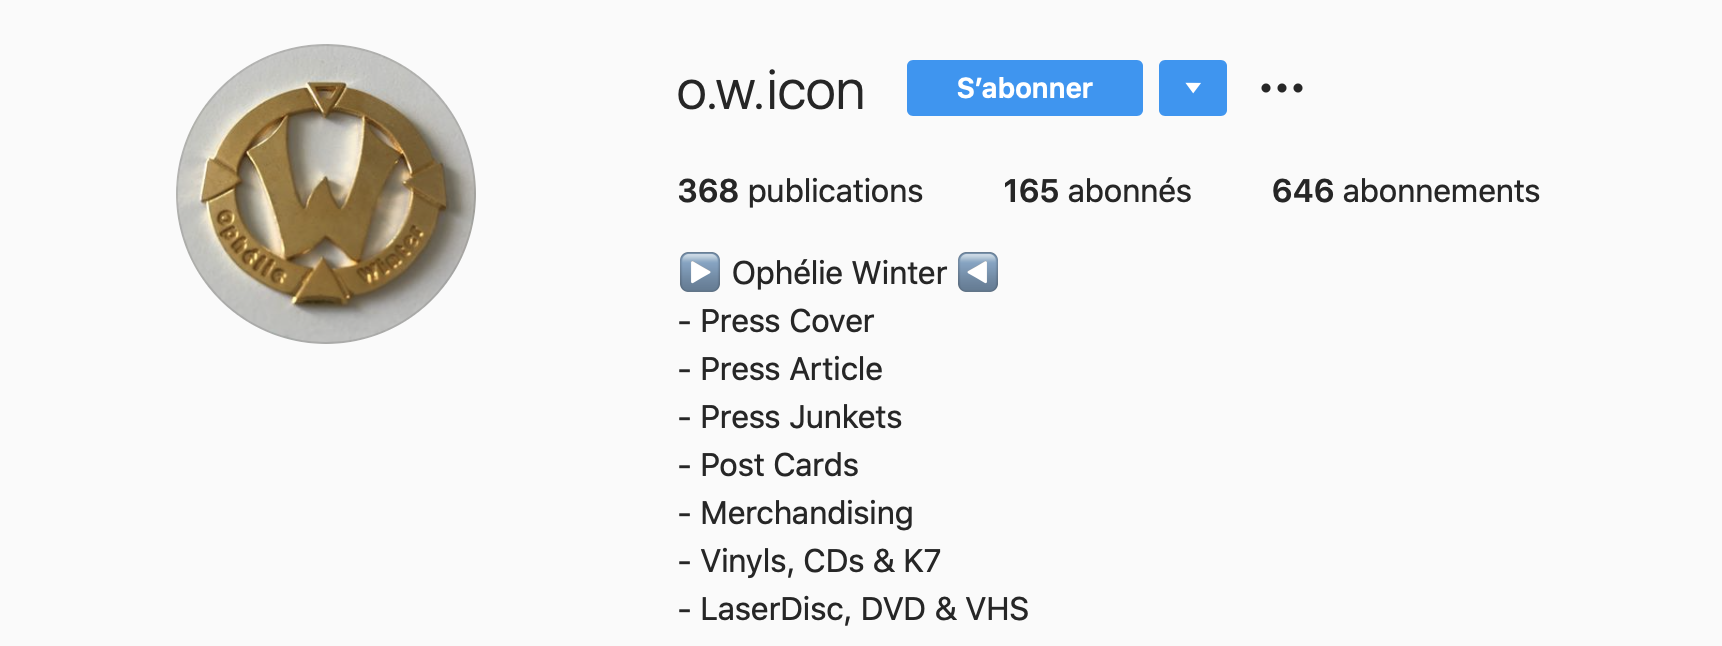 O.W.ICON, un compte Instagram sur Ophélie Winter